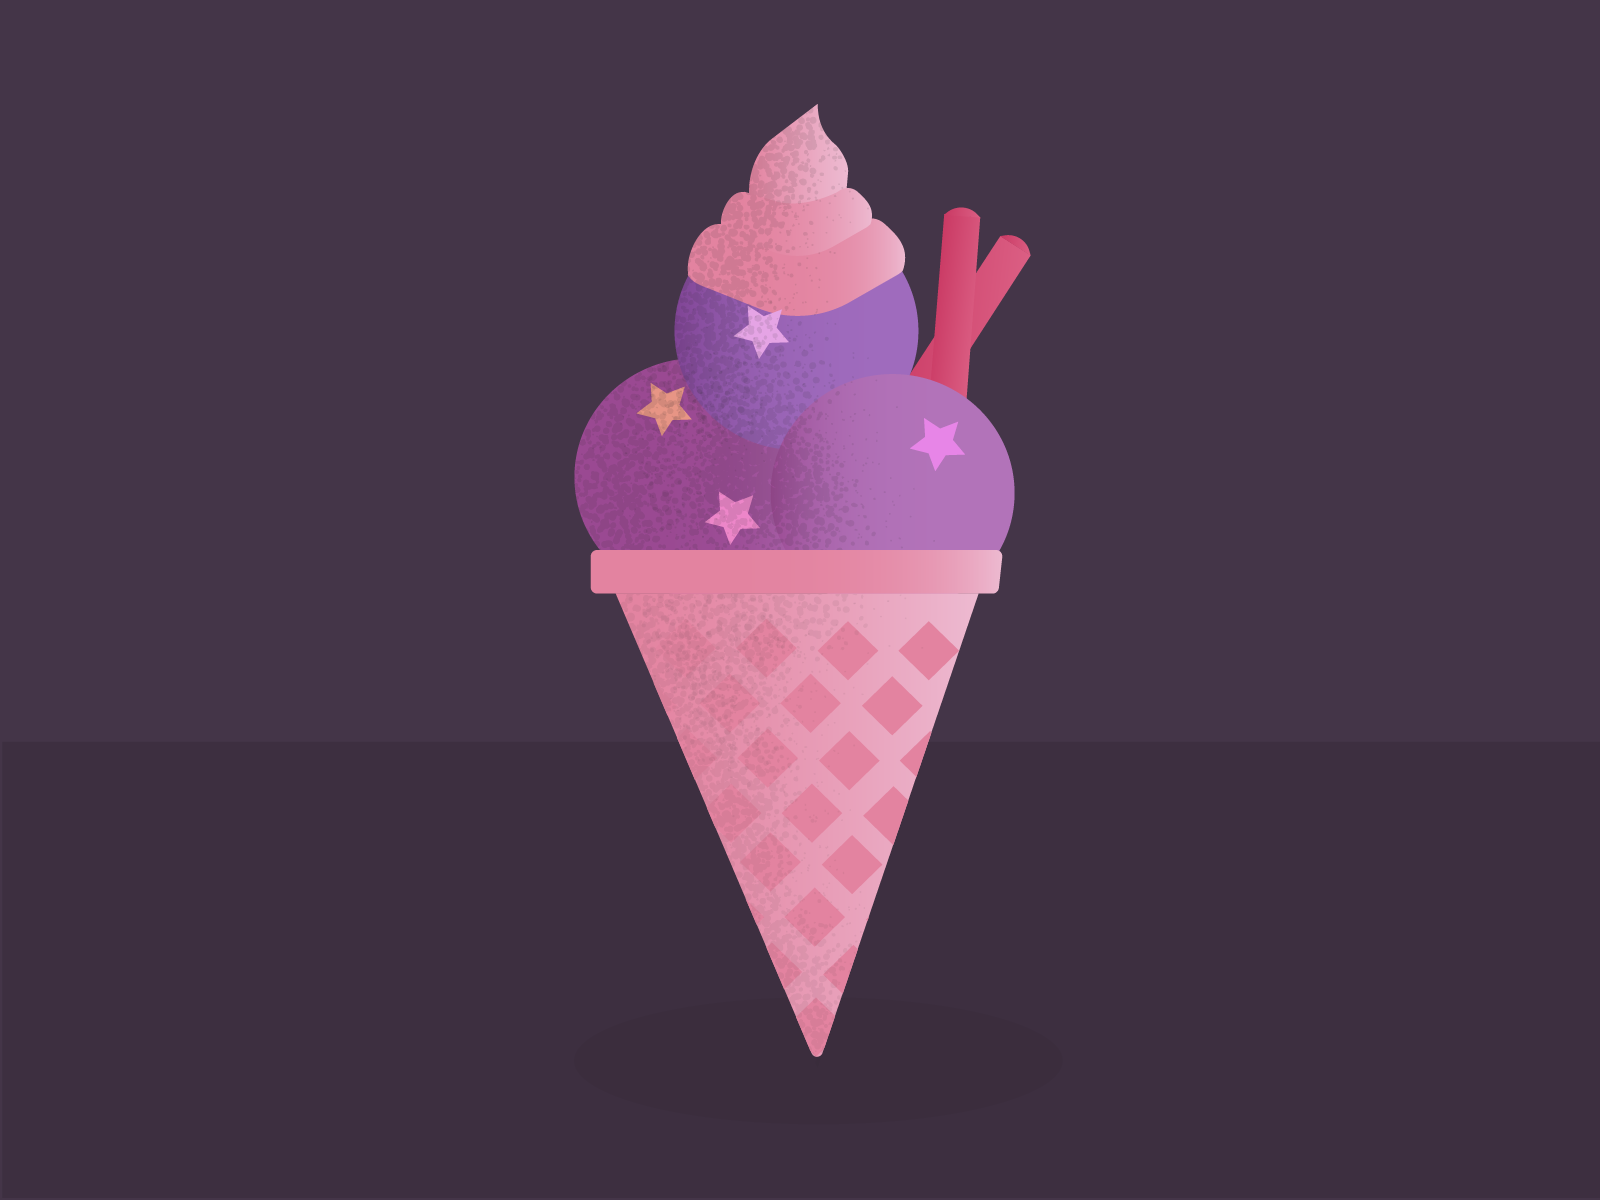 Рисуем мороженое в иллюстраторе